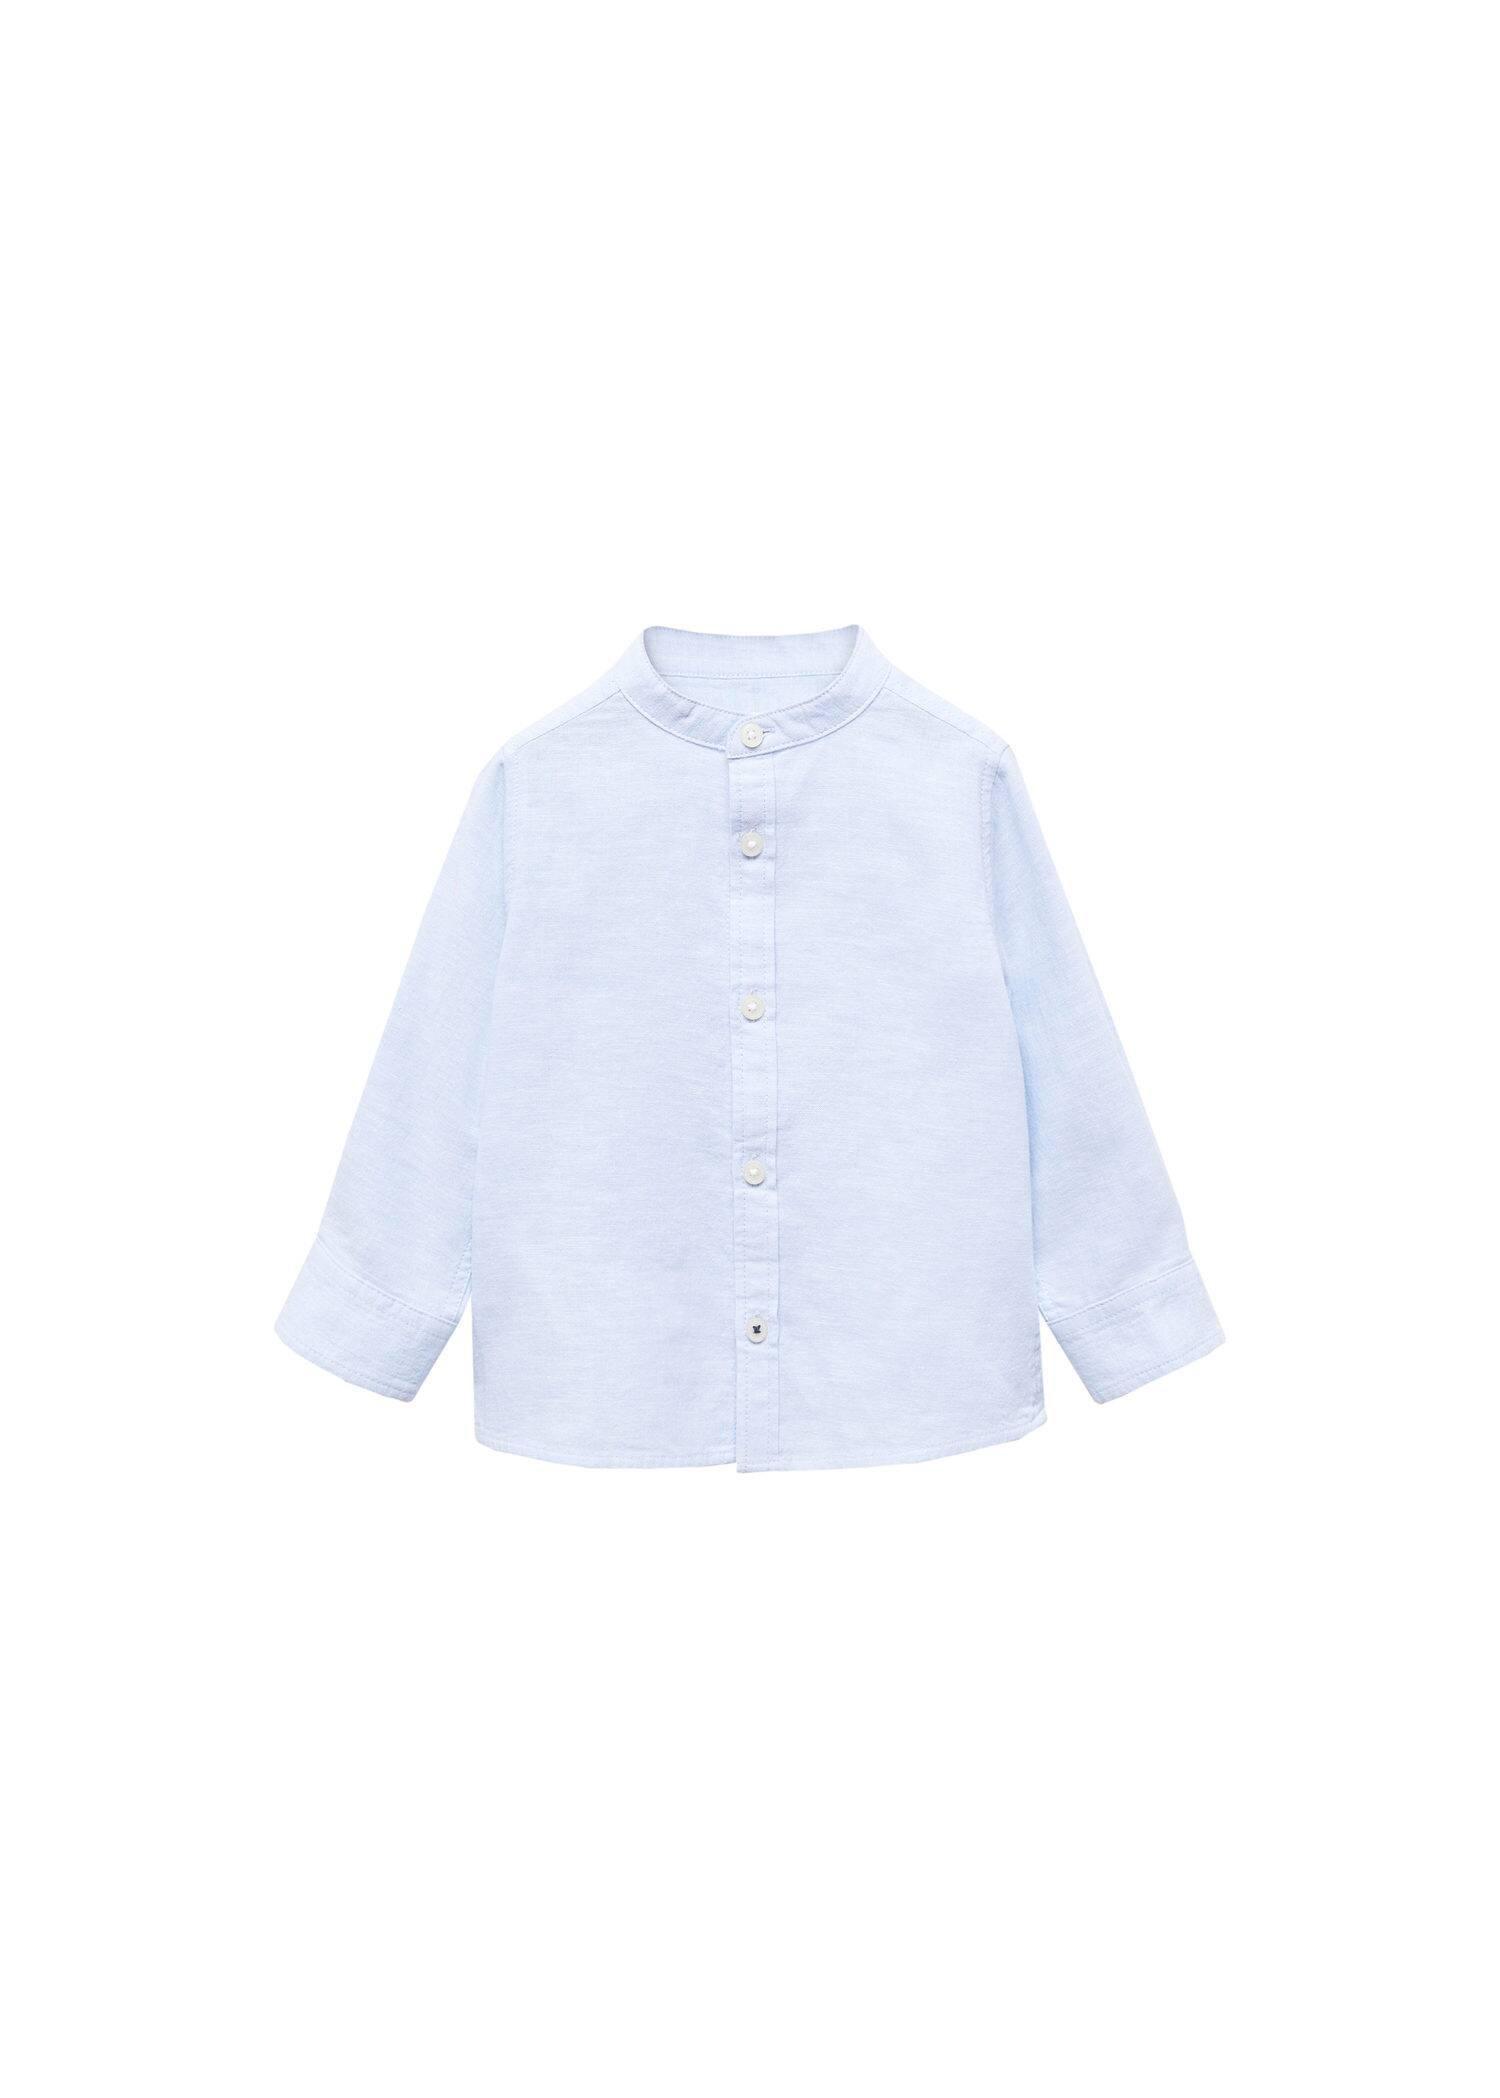 Mango - Blue Lt-Pastel Linen Shirt, Kids Boys